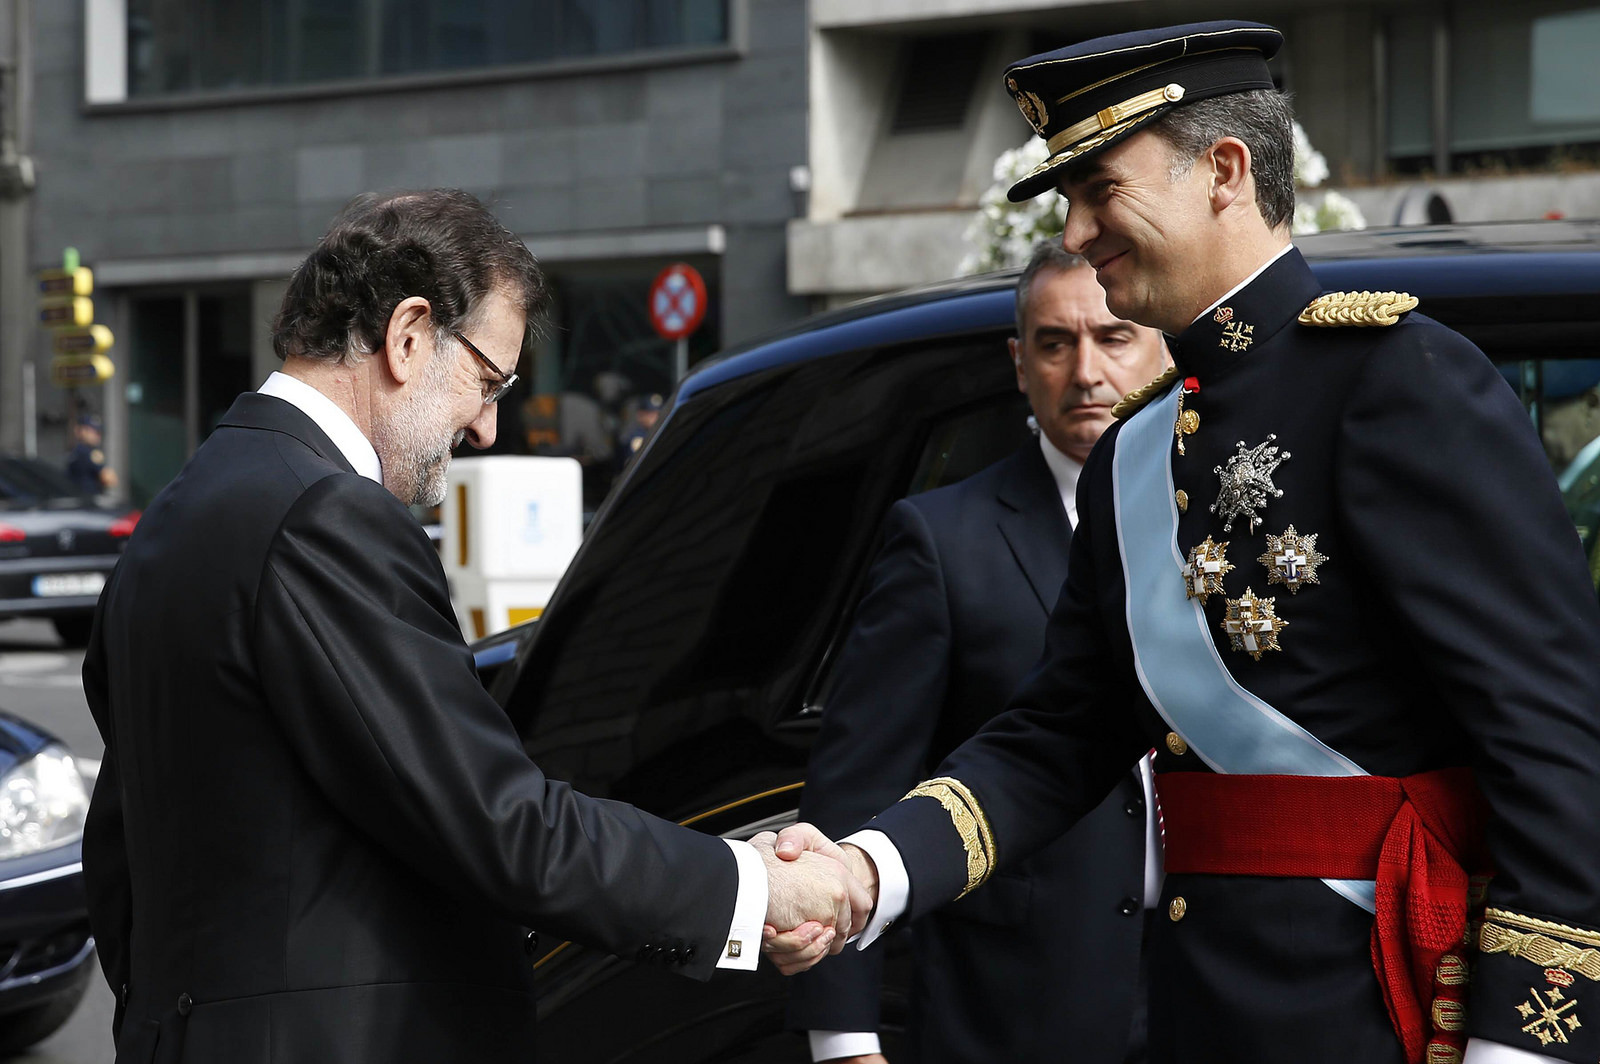 Rajoy amb Felip VI / La Moncloa - Gobierno de España